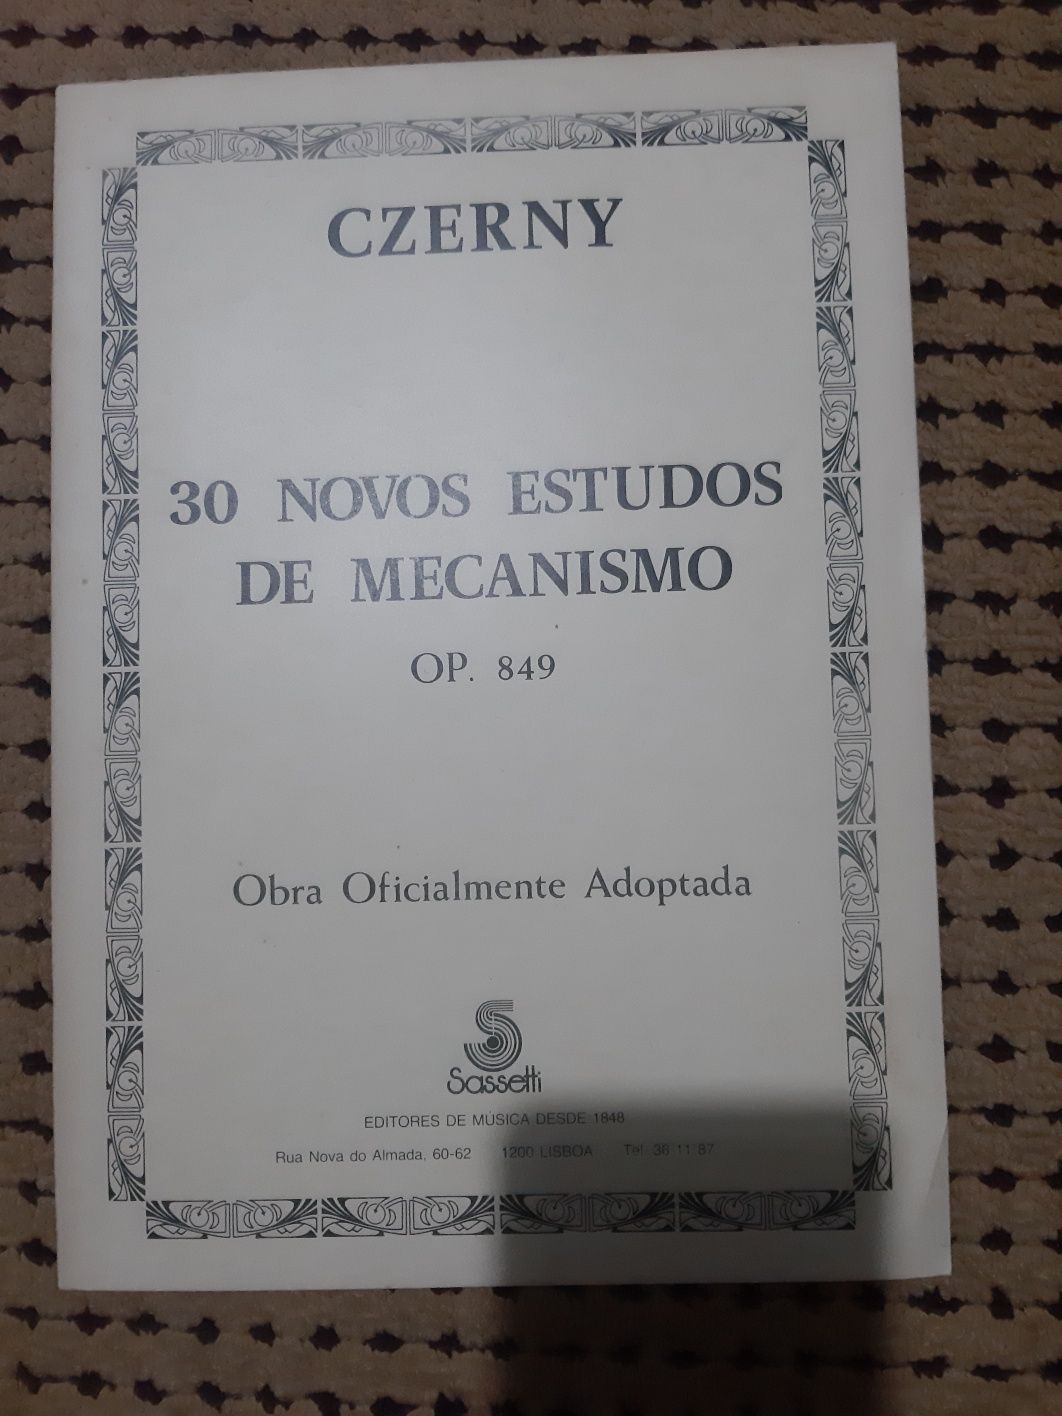 Czerny 30 novos estudos de mecanismo op.849 obra oficial